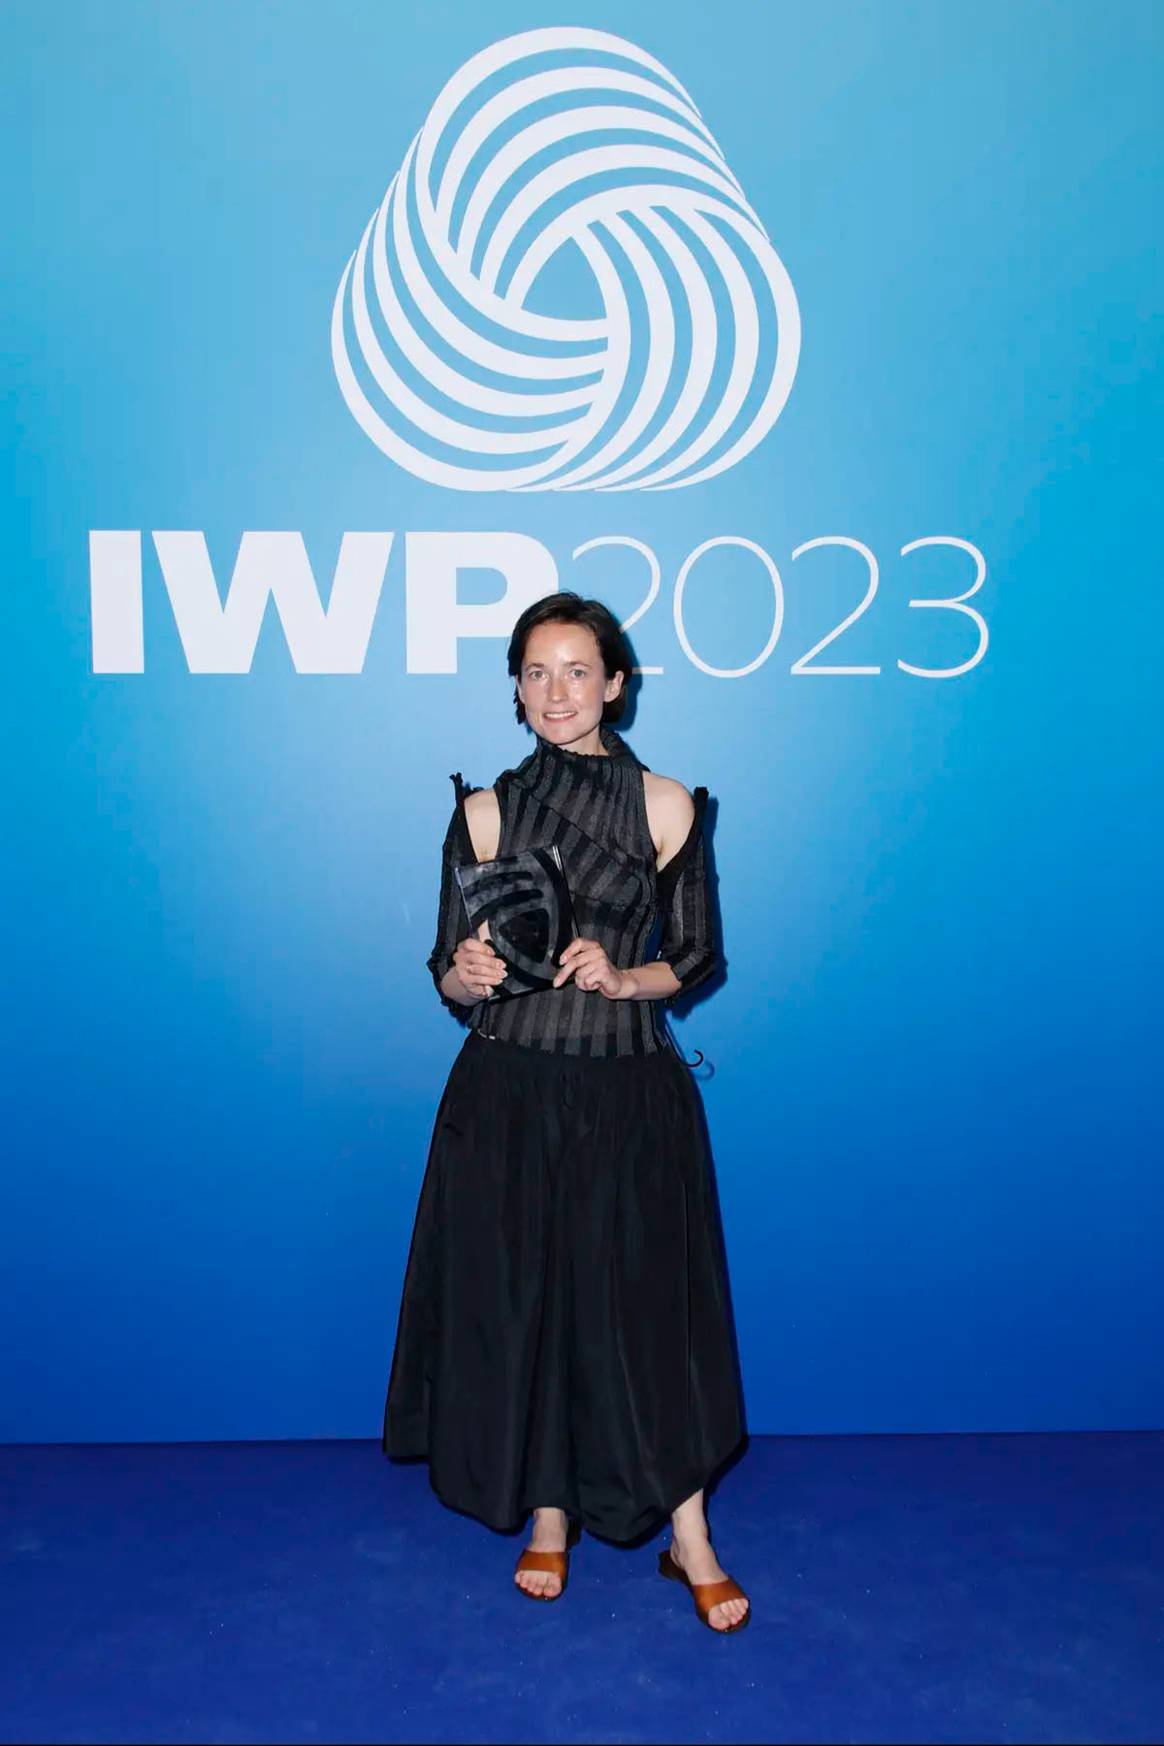 Photo Credits: Amalie Røge Hove, directora creativa de A. Roege Hove, firma de moda ganadora del IWP 2023. Woolmark Prize, página oficial.